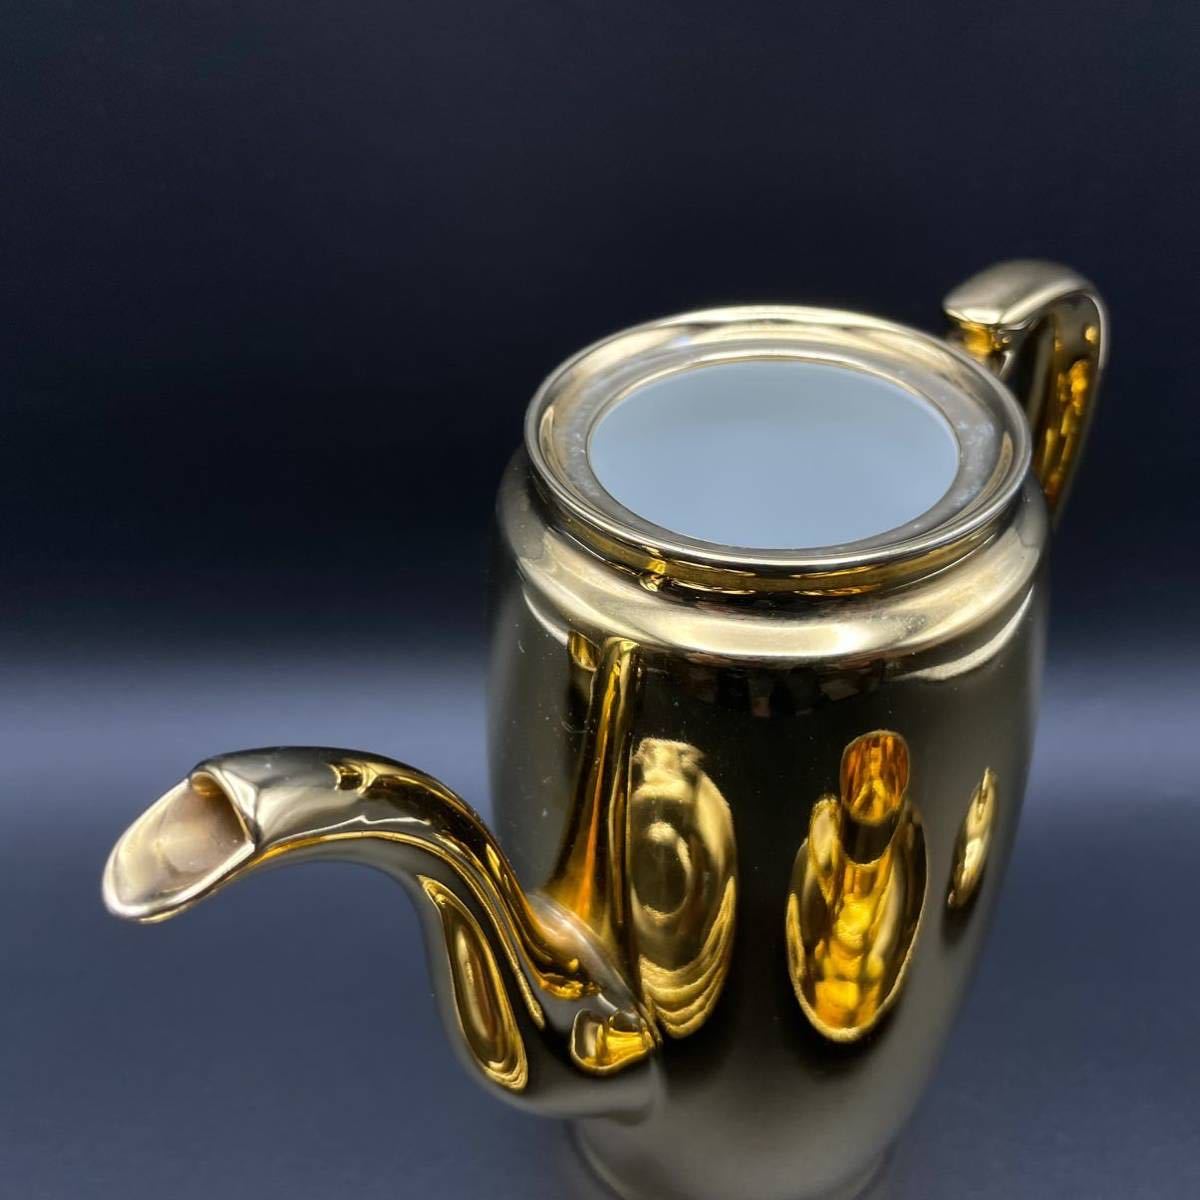 * роскошный 11 позиций комплект * Old Noritake Noritake Gold чай комплект золотой цвет maru ki печать Британия экспорт предназначенный керамика 1935 год примерно Англия золотой . золотой 